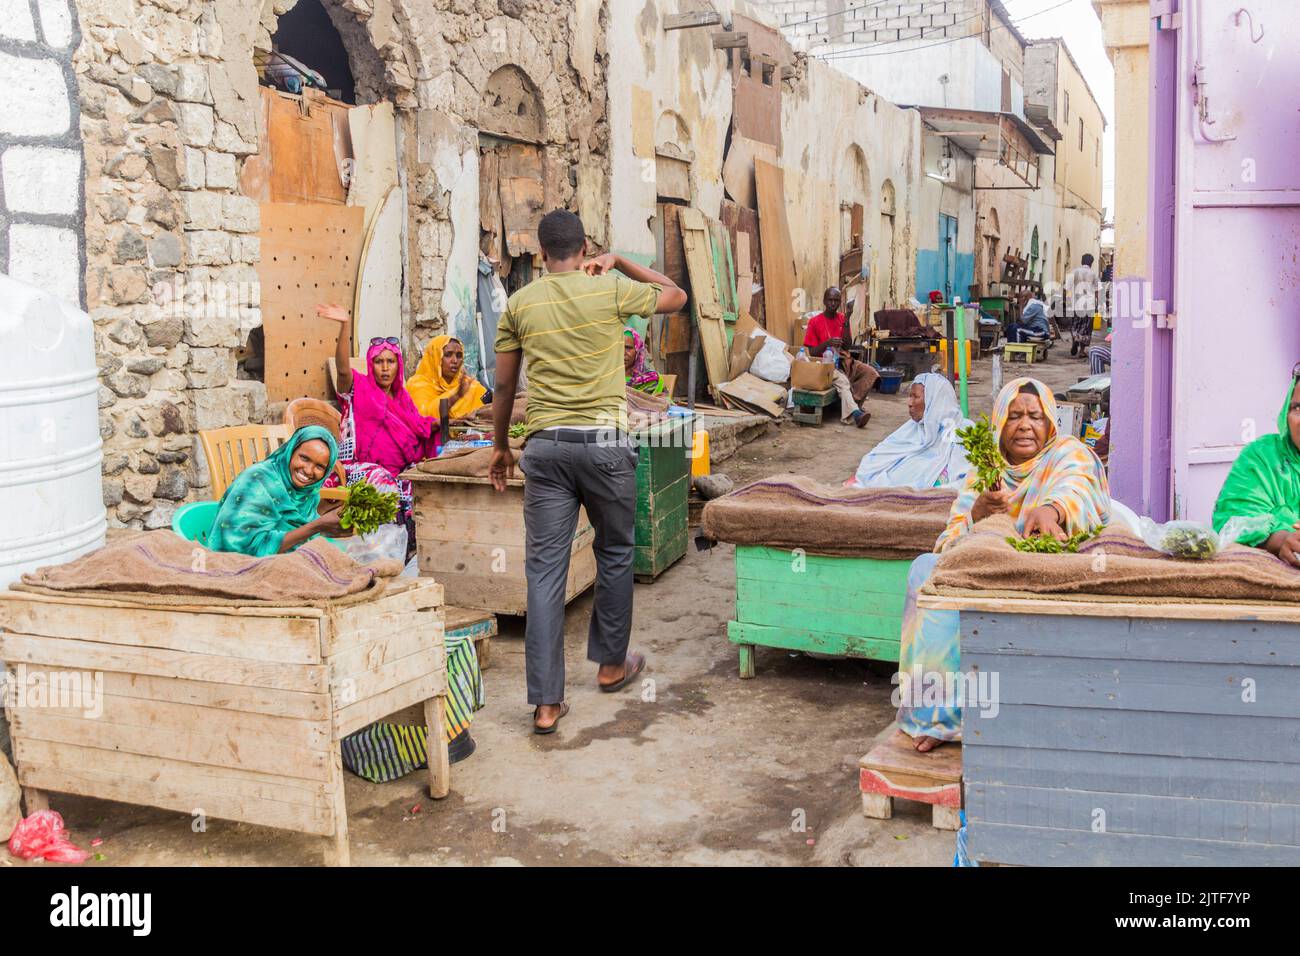 DJIBOUTI, DJIBOUTI - APRIL 17, 2019: Khat leaves sellers in Djibouti, capital of Djibouti. Stock Photo